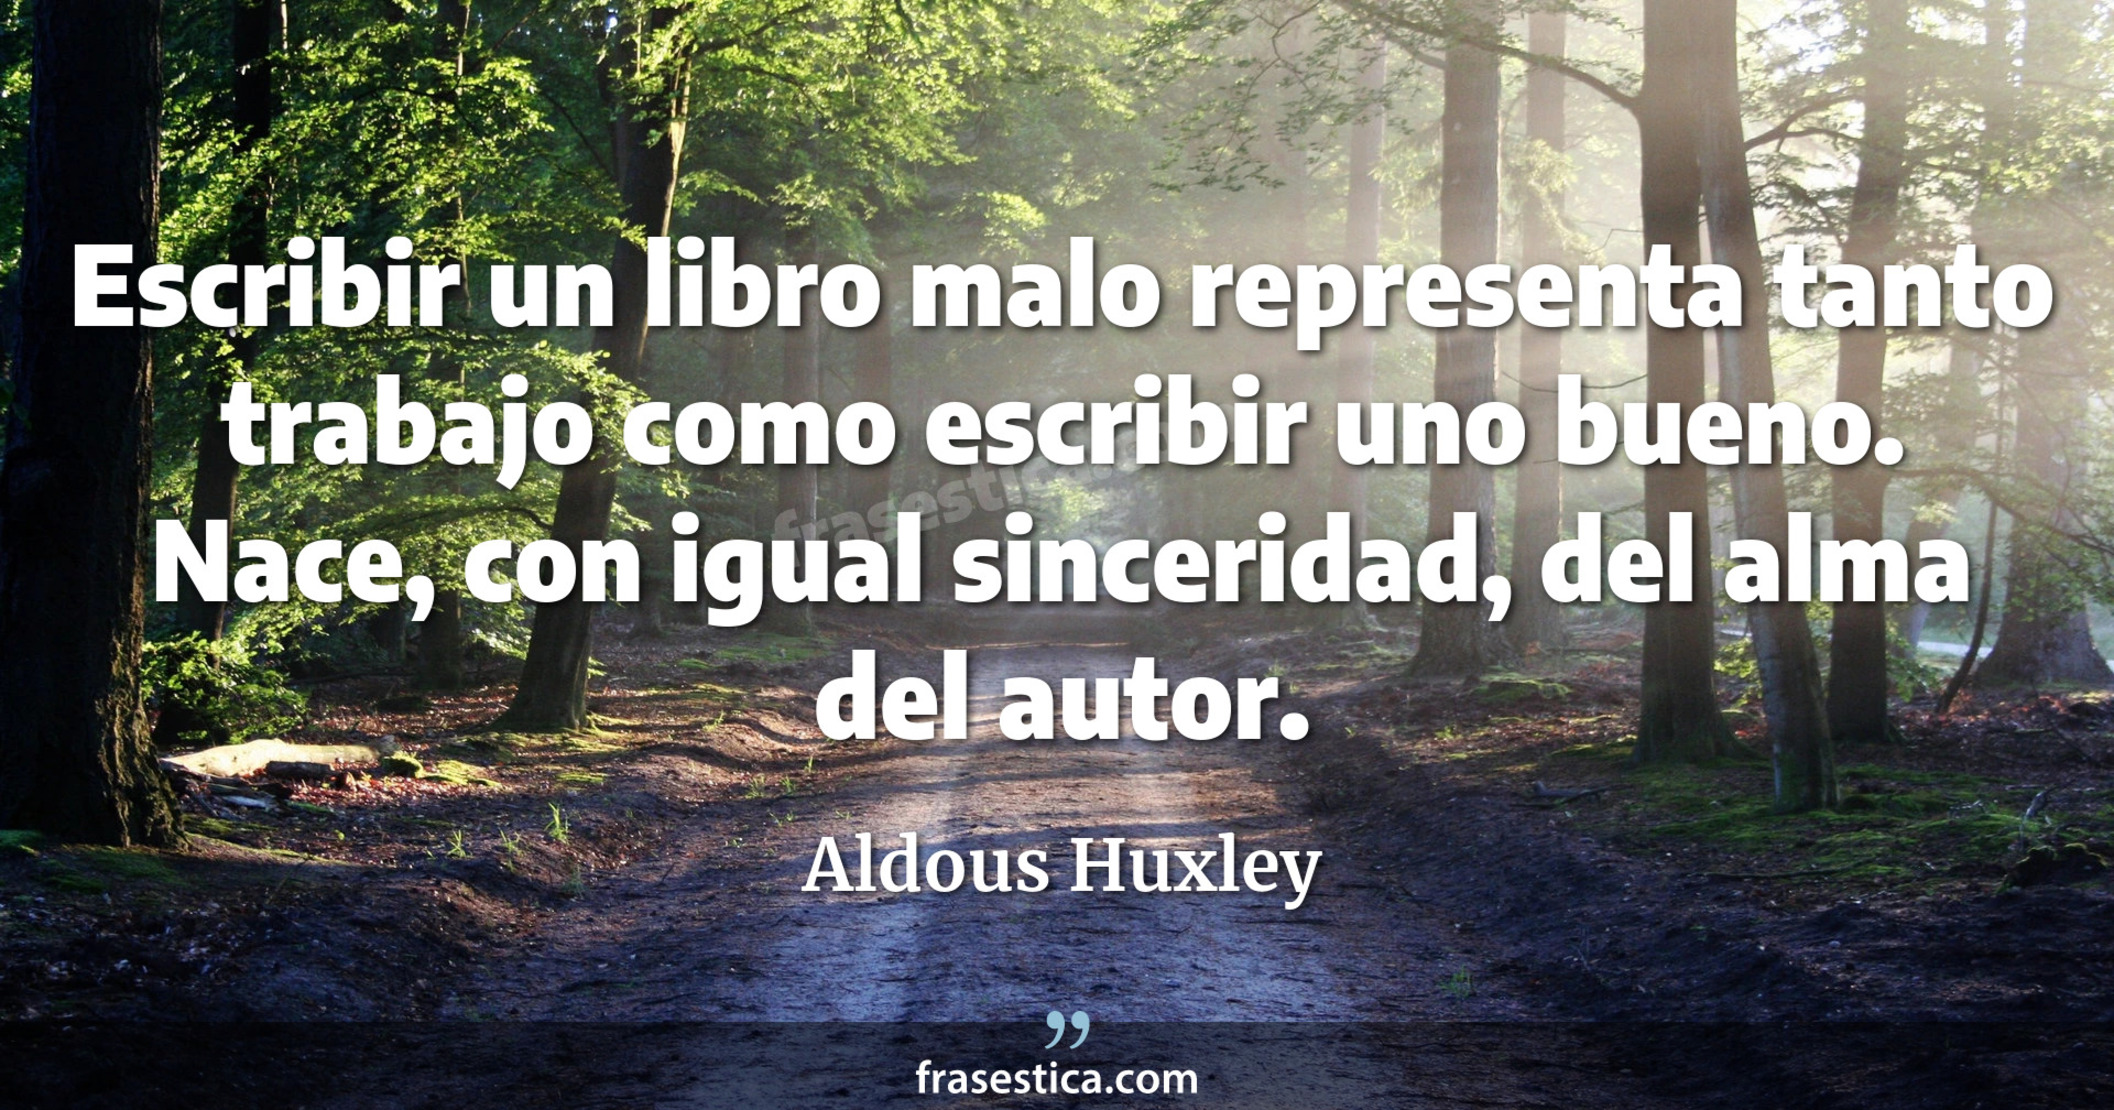 Escribir un libro malo representa tanto trabajo como escribir uno bueno. Nace, con igual sinceridad, del alma del autor. - Aldous Huxley